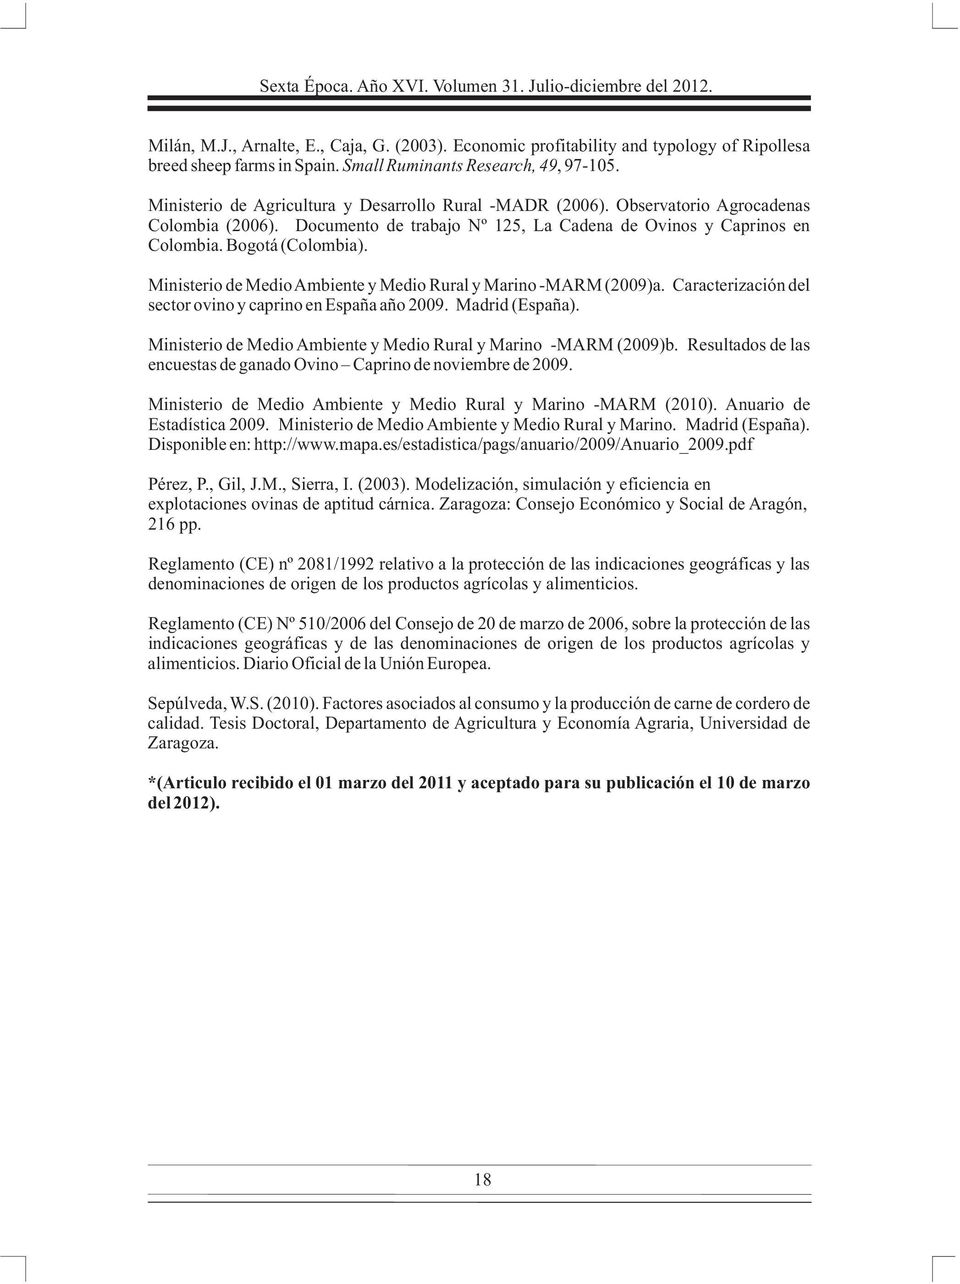 Documento de trabajo Nº 125, La Cadena de Ovinos y Caprinos en Colombia. Bogotá (Colombia). Ministerio de Medio Ambiente y Medio Rural y Marino -MARM (2009)a.